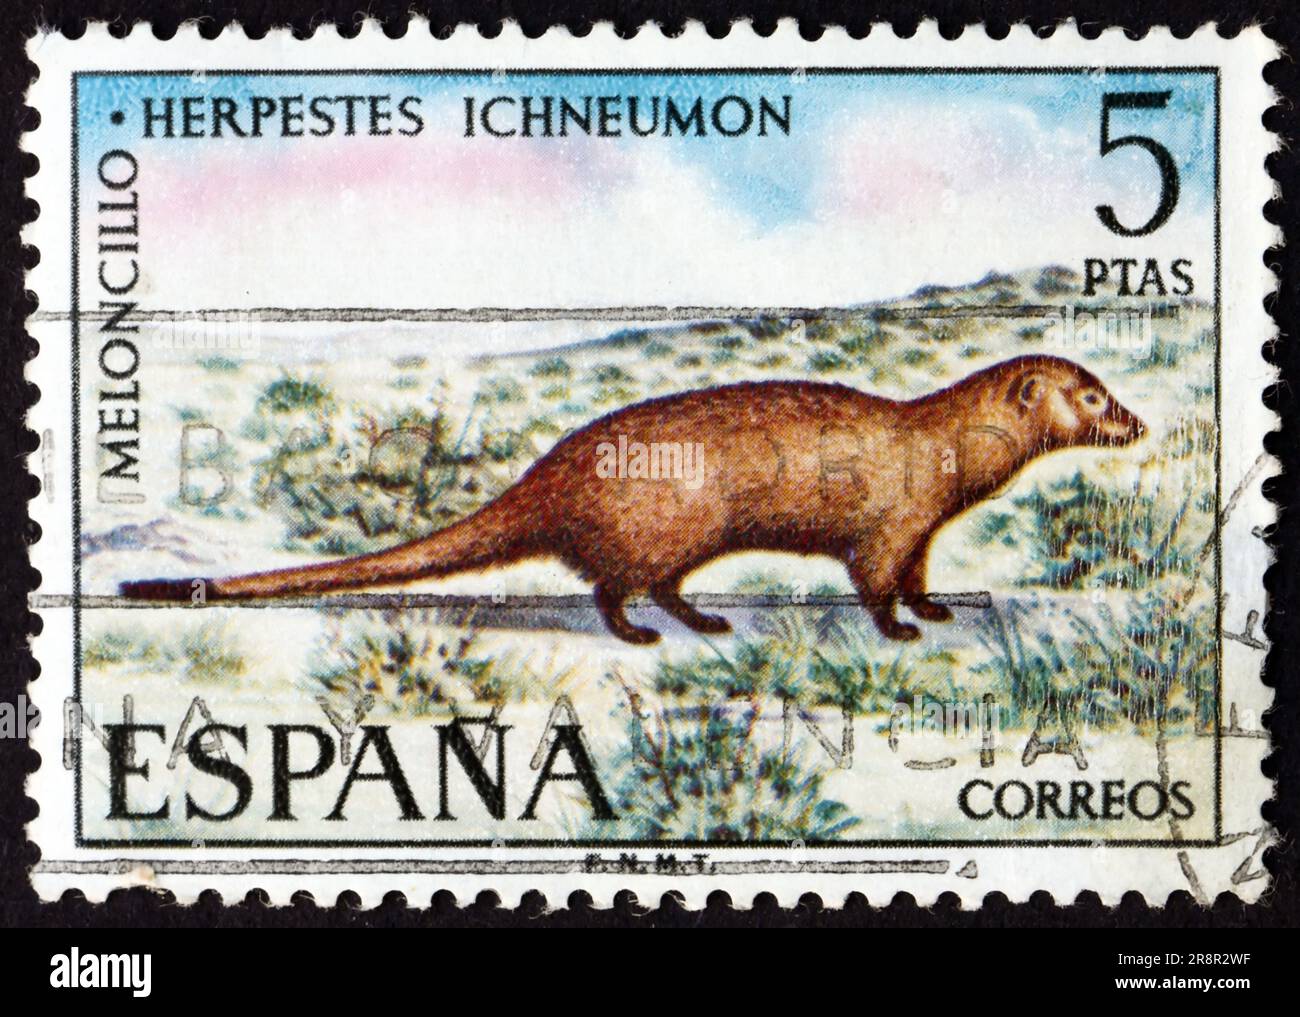 SPANIEN - CA. 1972: Ein in Spanien gedruckter Stempel zeigt, dass der ägyptische Mungo herpestes ichneumon eine in den Küstenregionen entlang t heimische Mungose ist Stockfoto